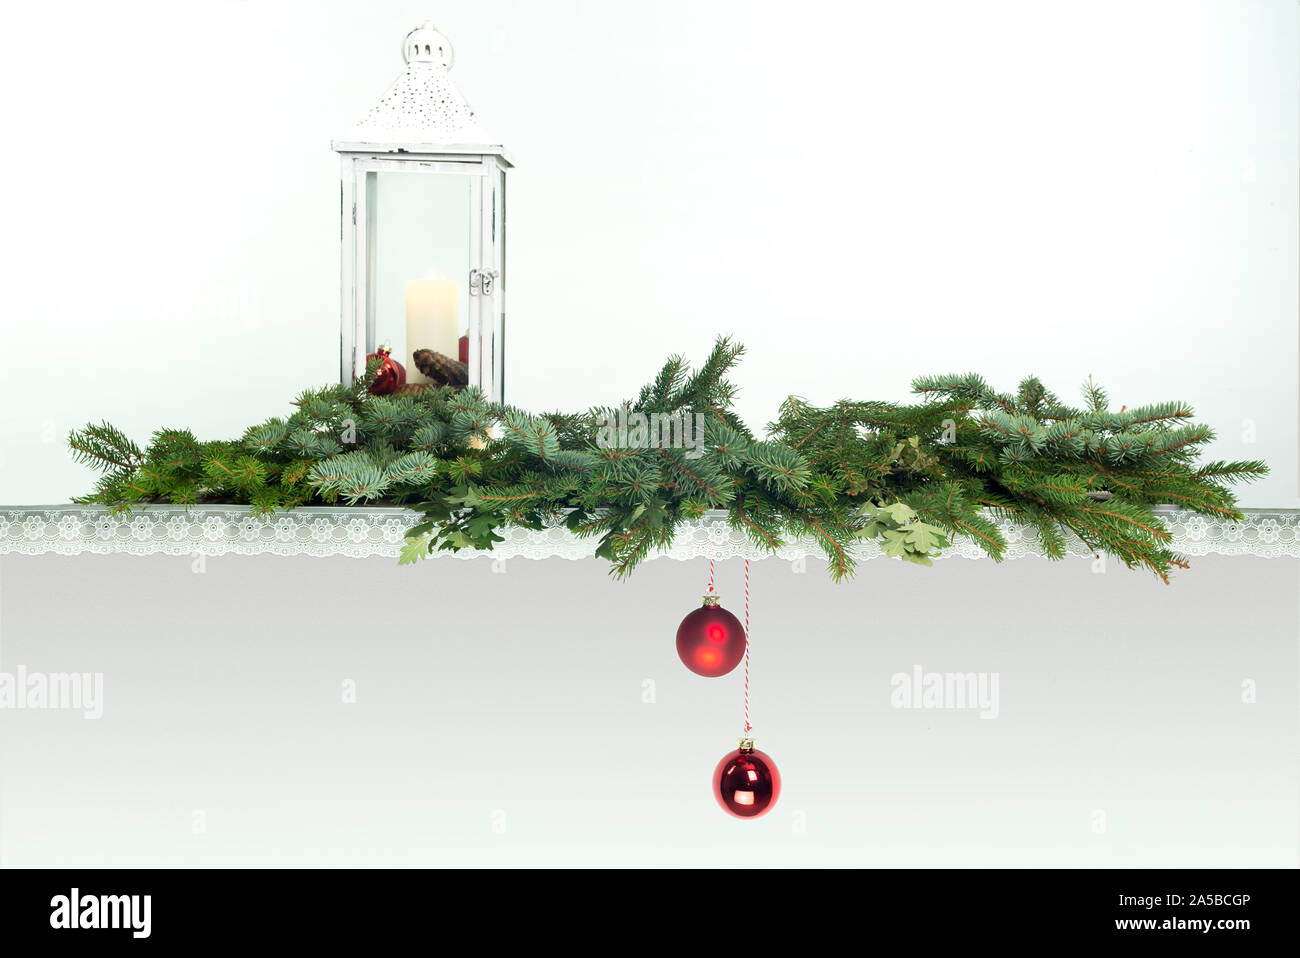 Ein altes Holzbrett mit Spitze verziert. Vintage Laterne mit Kerze. Zweige der Tannen Blau und Grün. 2 rote Weihnachtskugeln sind nach unten hängen. Stockfoto